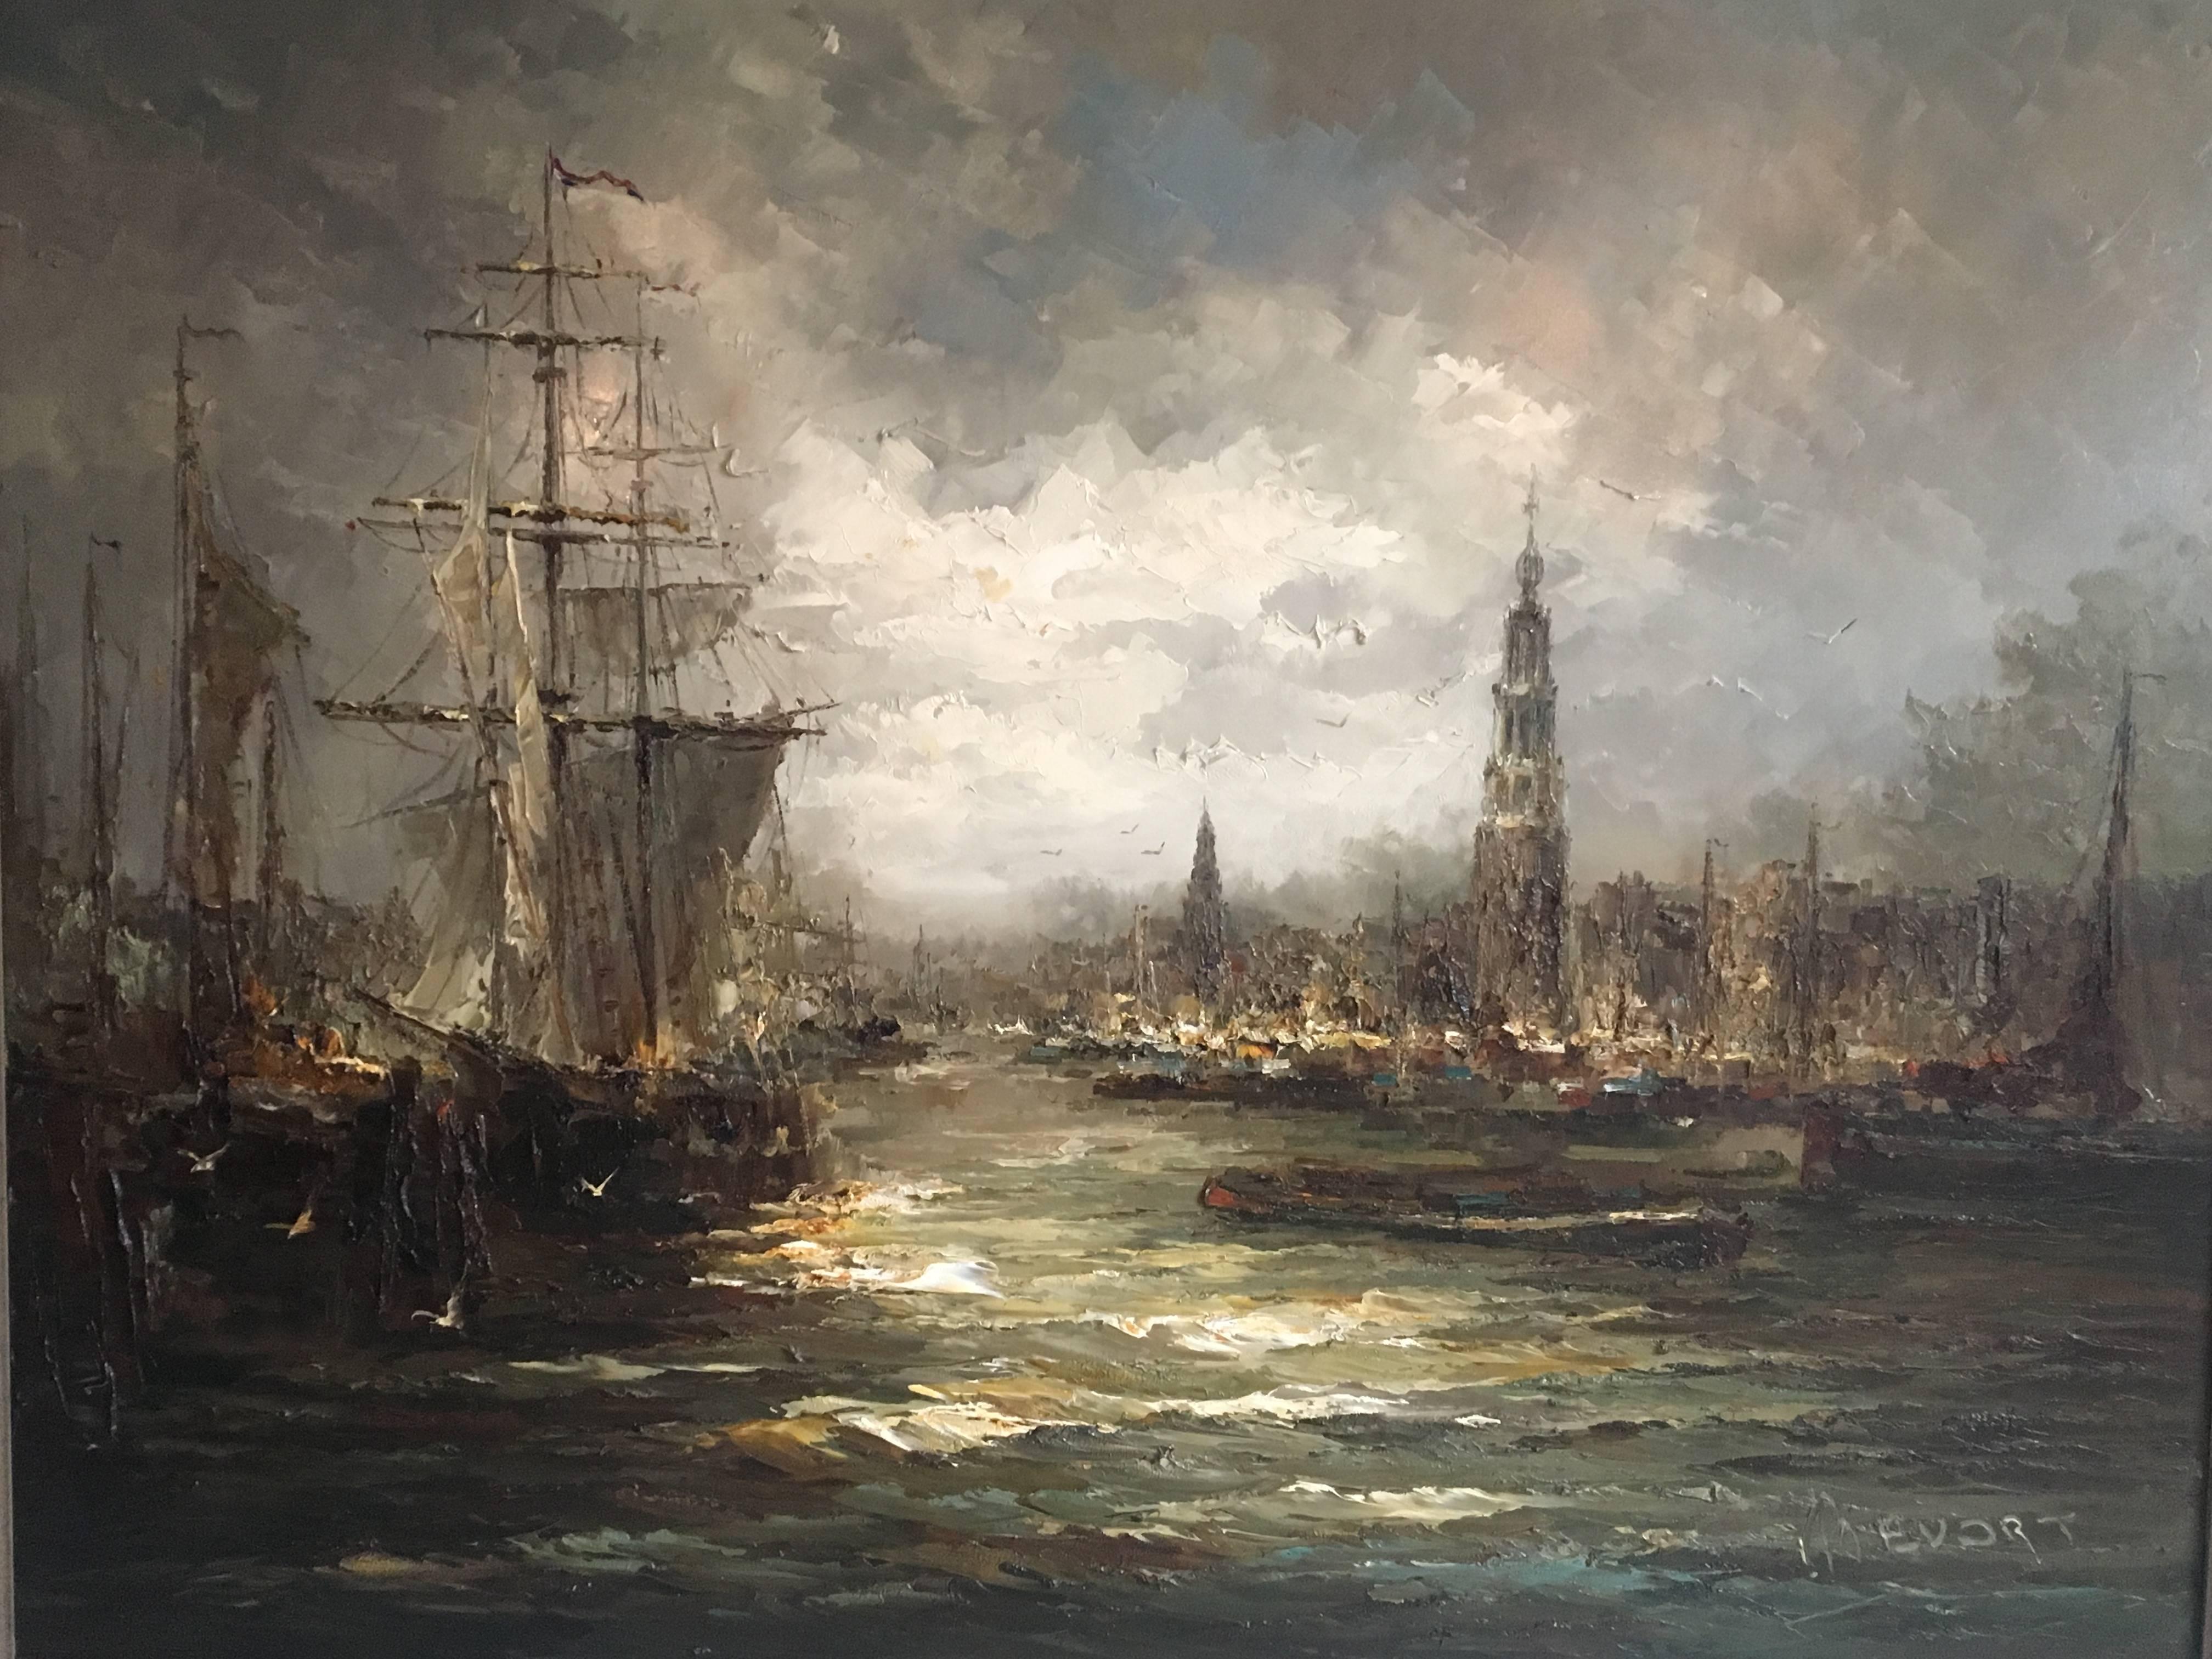 Dieses besonders große Gemälde wurde von John (Johannes, Hubertus) Be'vort aus den Niederlanden geschaffen. Es zeigt eine maritime oder Hafenszene und wurde mit dunklen Farben gemalt, die eine raue Wetterszene darstellen. Möwen und aufkommender